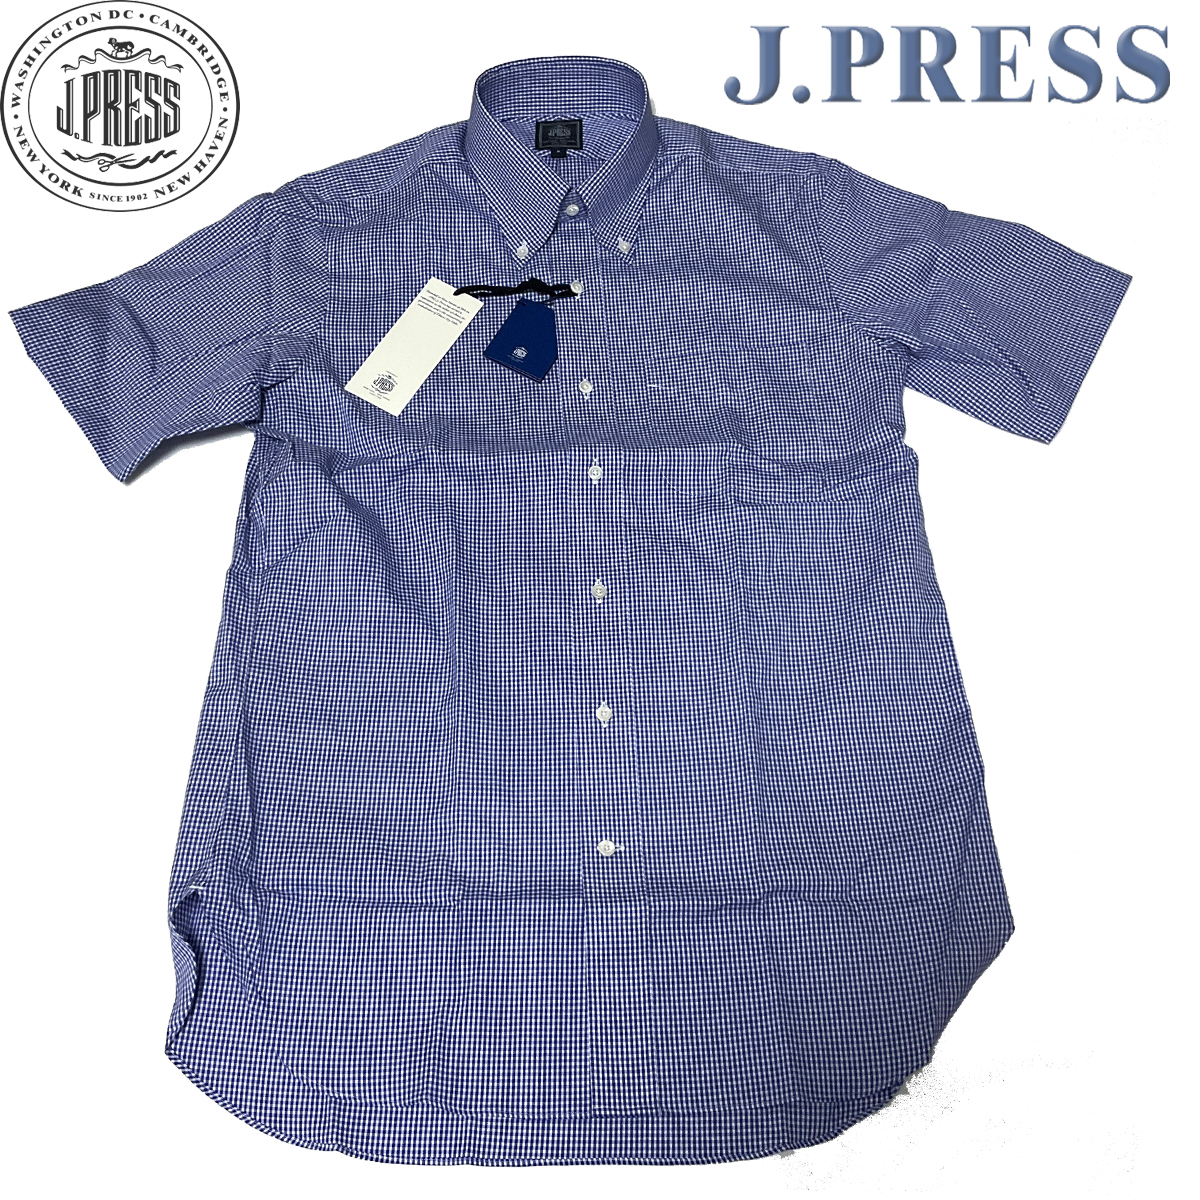 JP419XL новый товар стандартный J.PRESS ORIGINALS J Press PREMIUM PLEATS / форма устойчивость серебристый жевательная резинка проверка рубашка с коротким рукавом кнопка down рубашка прохладный biz